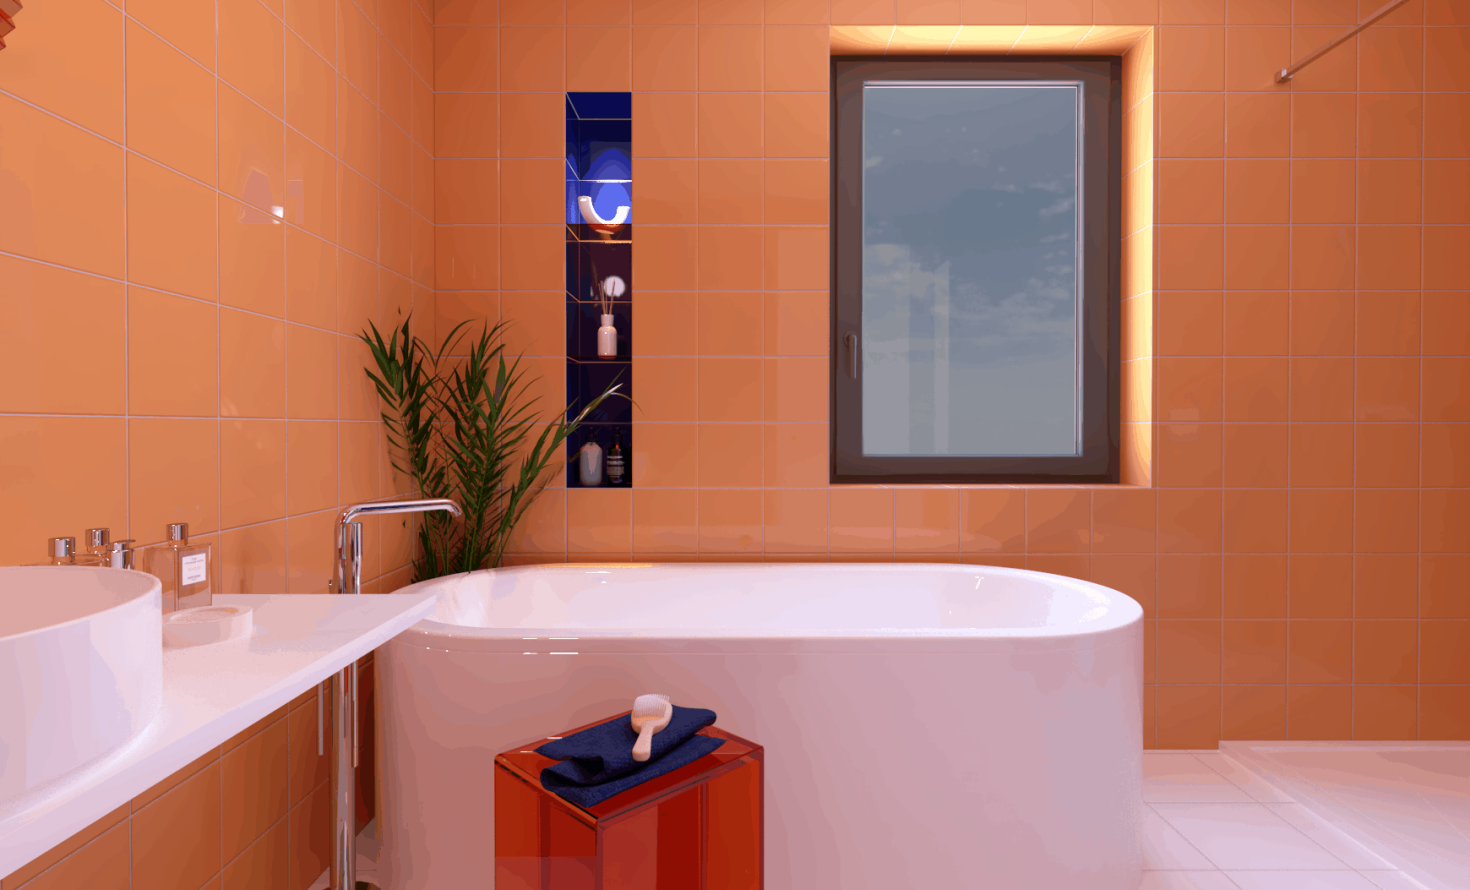 SIKO Volně stojící moderní vana, bílá dlažba, barevný oranžový obkad, koupelnová nika s poličkou, umyvadlo na desku, vysoká vanová baterie